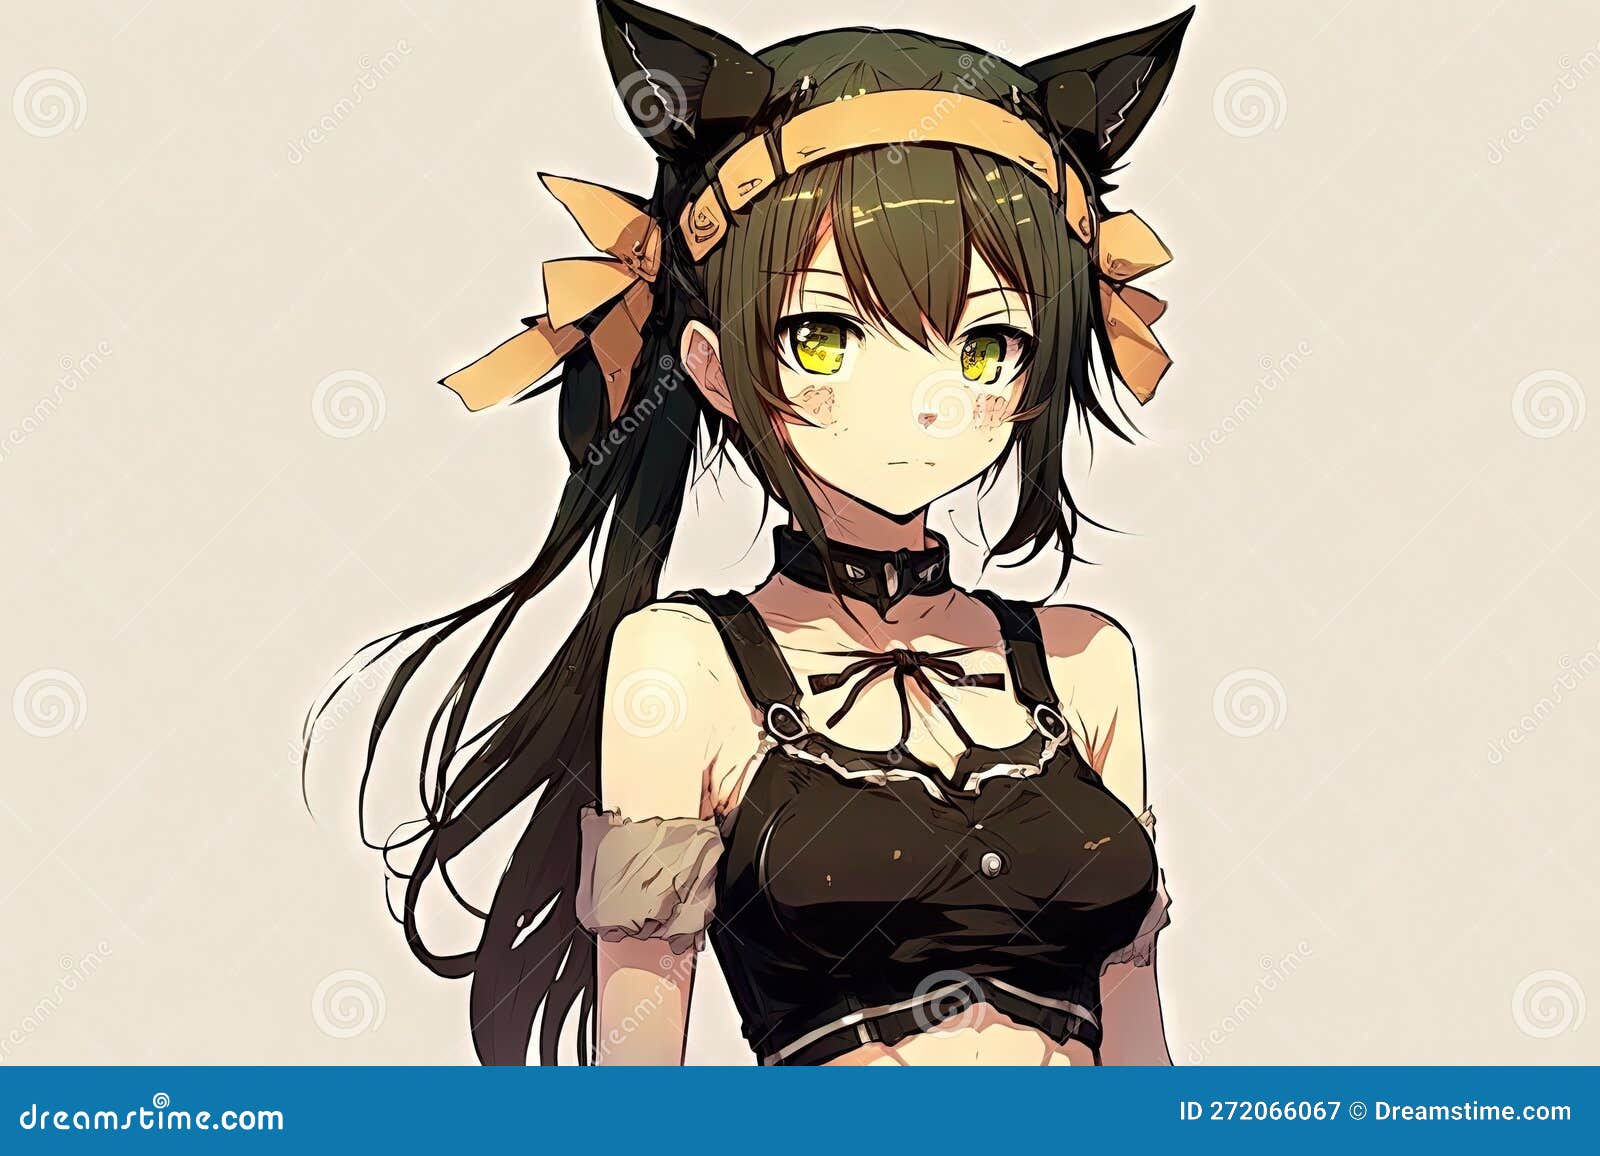 Anime girl with bunny ears by RainbowTalyaUnicorn on DeviantArt